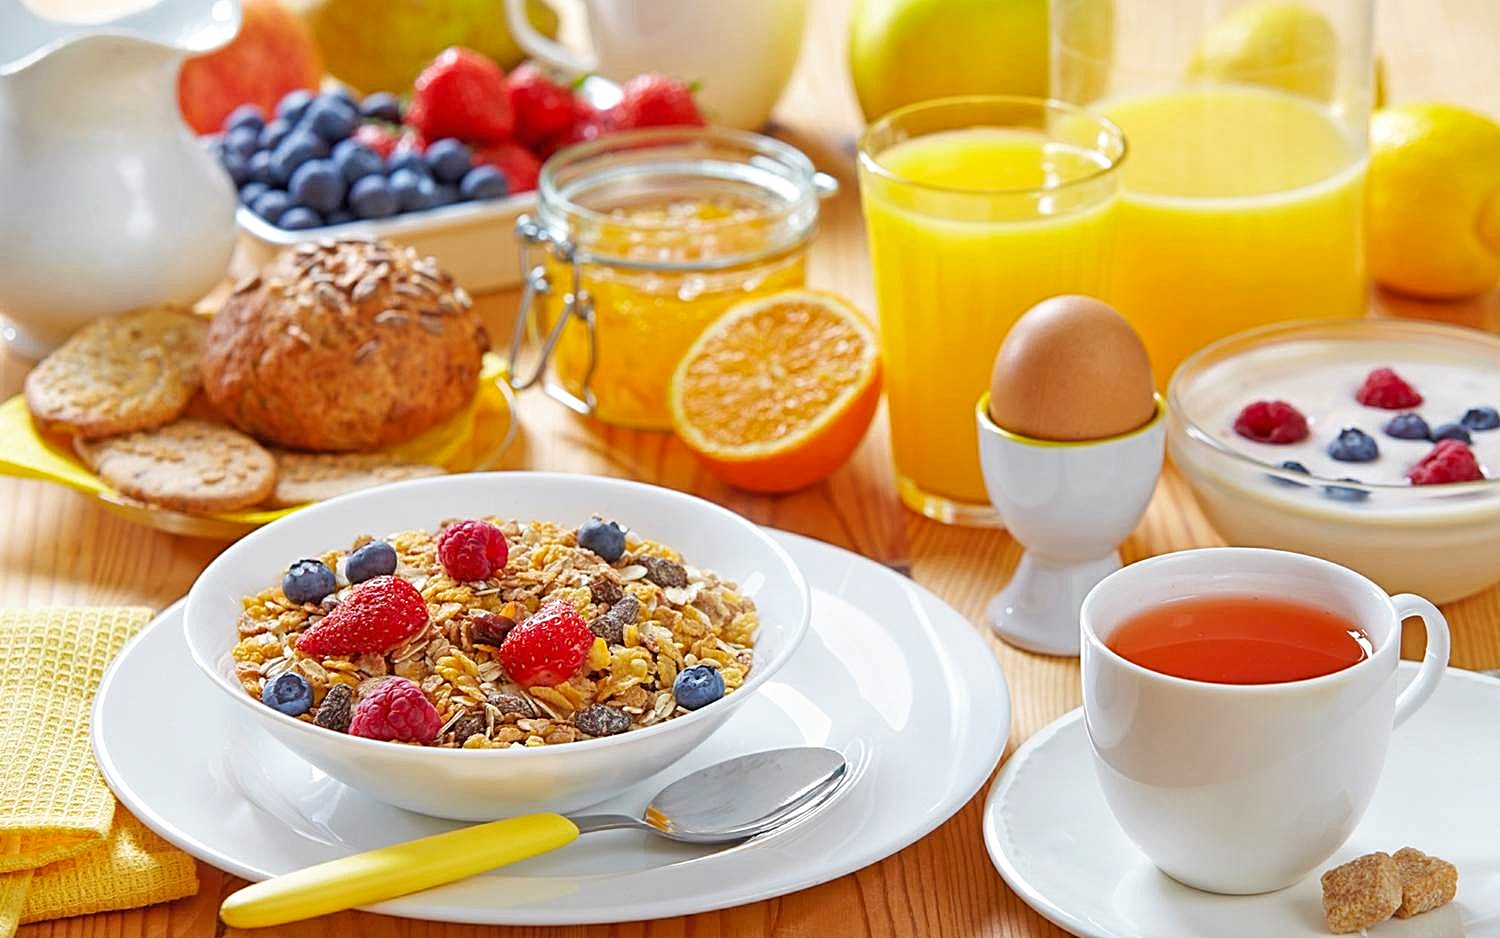 Самый важный прием пищи это завтрак. не секрет, что завтрак - самый важный прием пищи, который ни в коем случае нельзя пропускать!